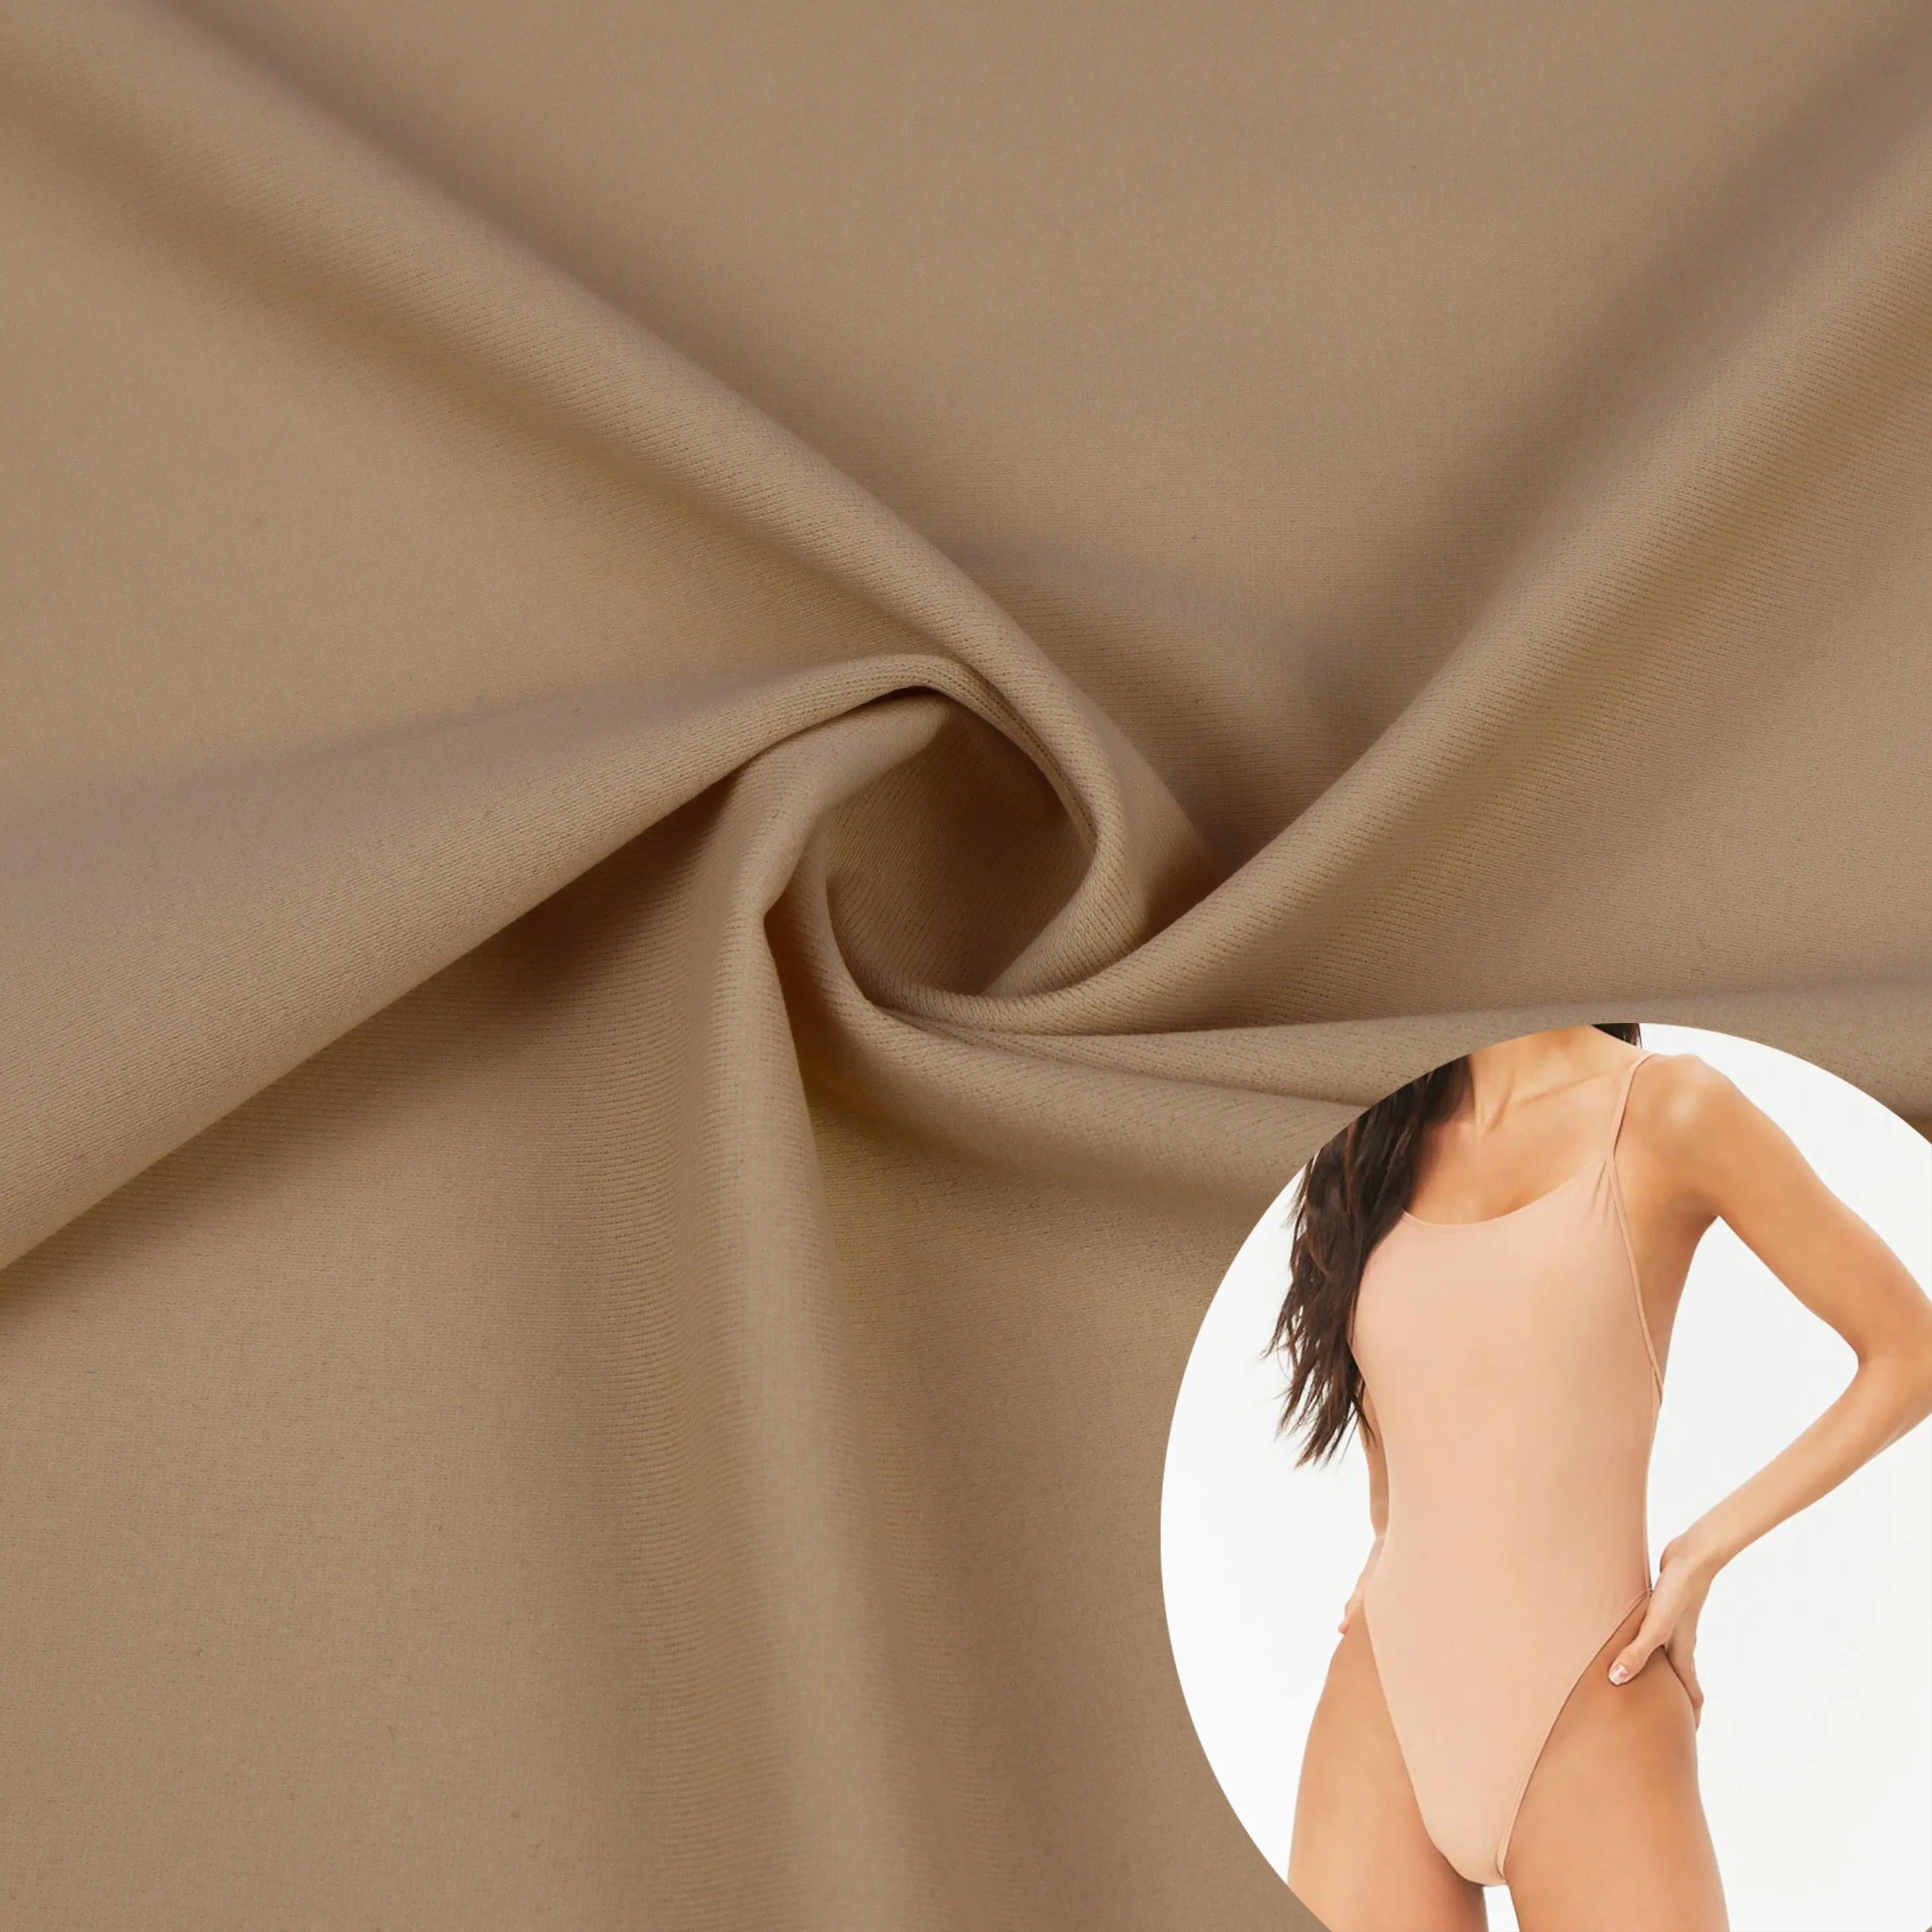 Poliamid elastan yüksek elastik triko örgü stok lot bikini kumaş için mayo